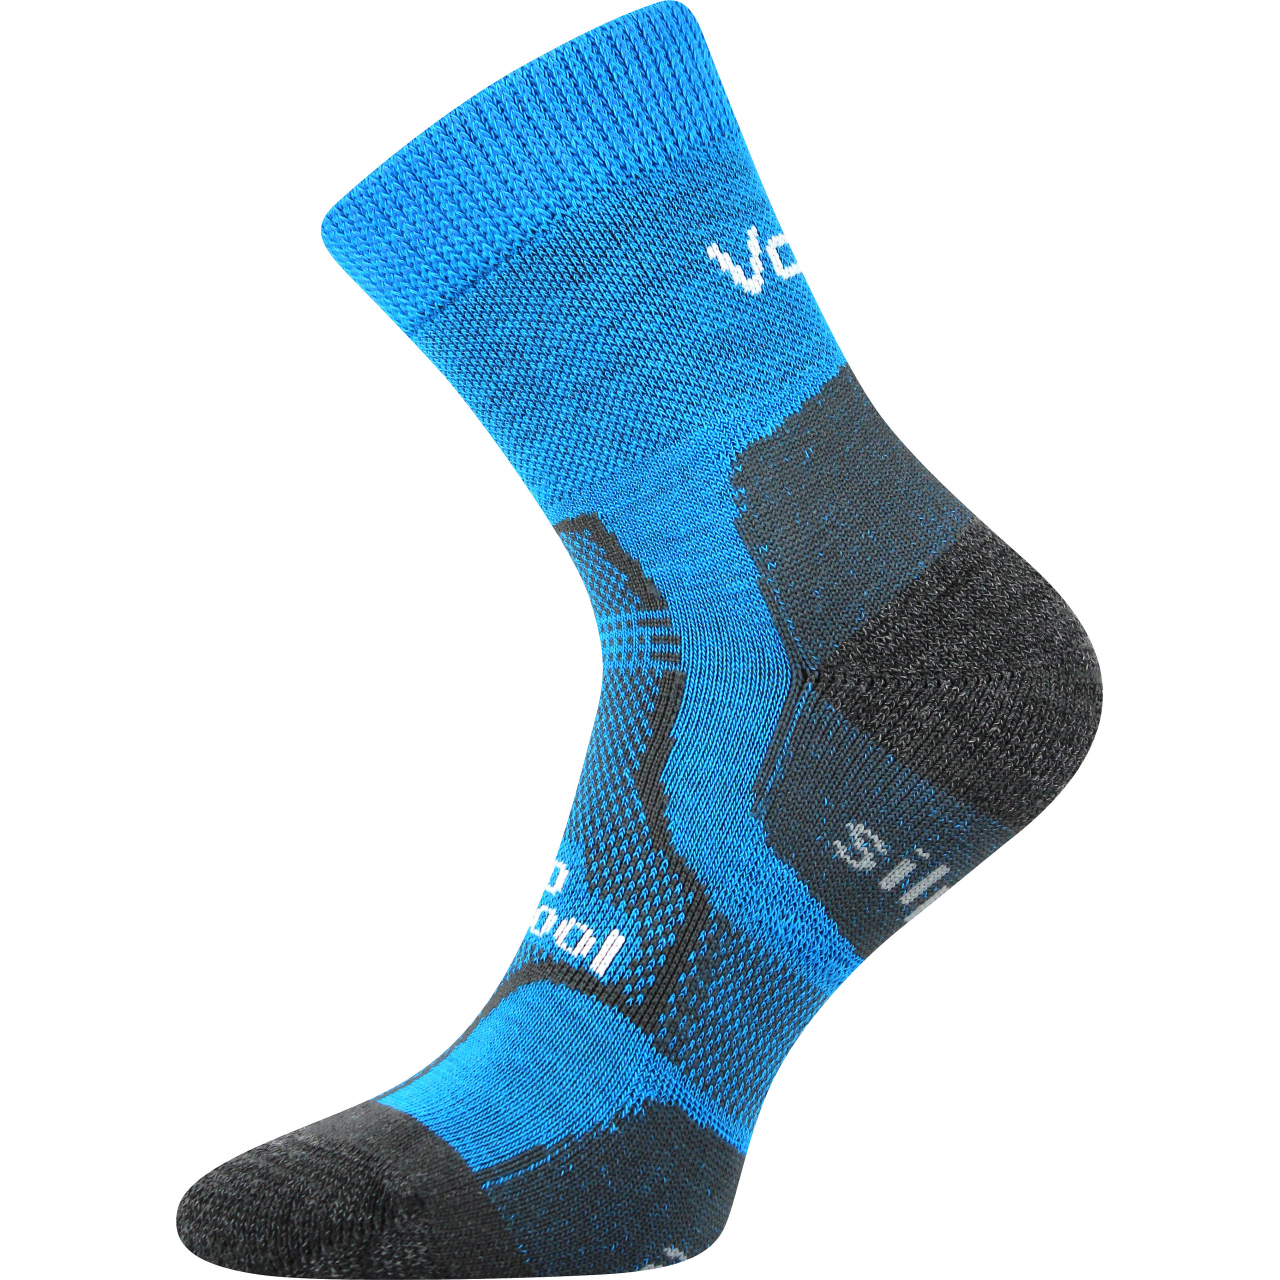 Ponožky unisex zimní Voxx Granit - modré, 43-46